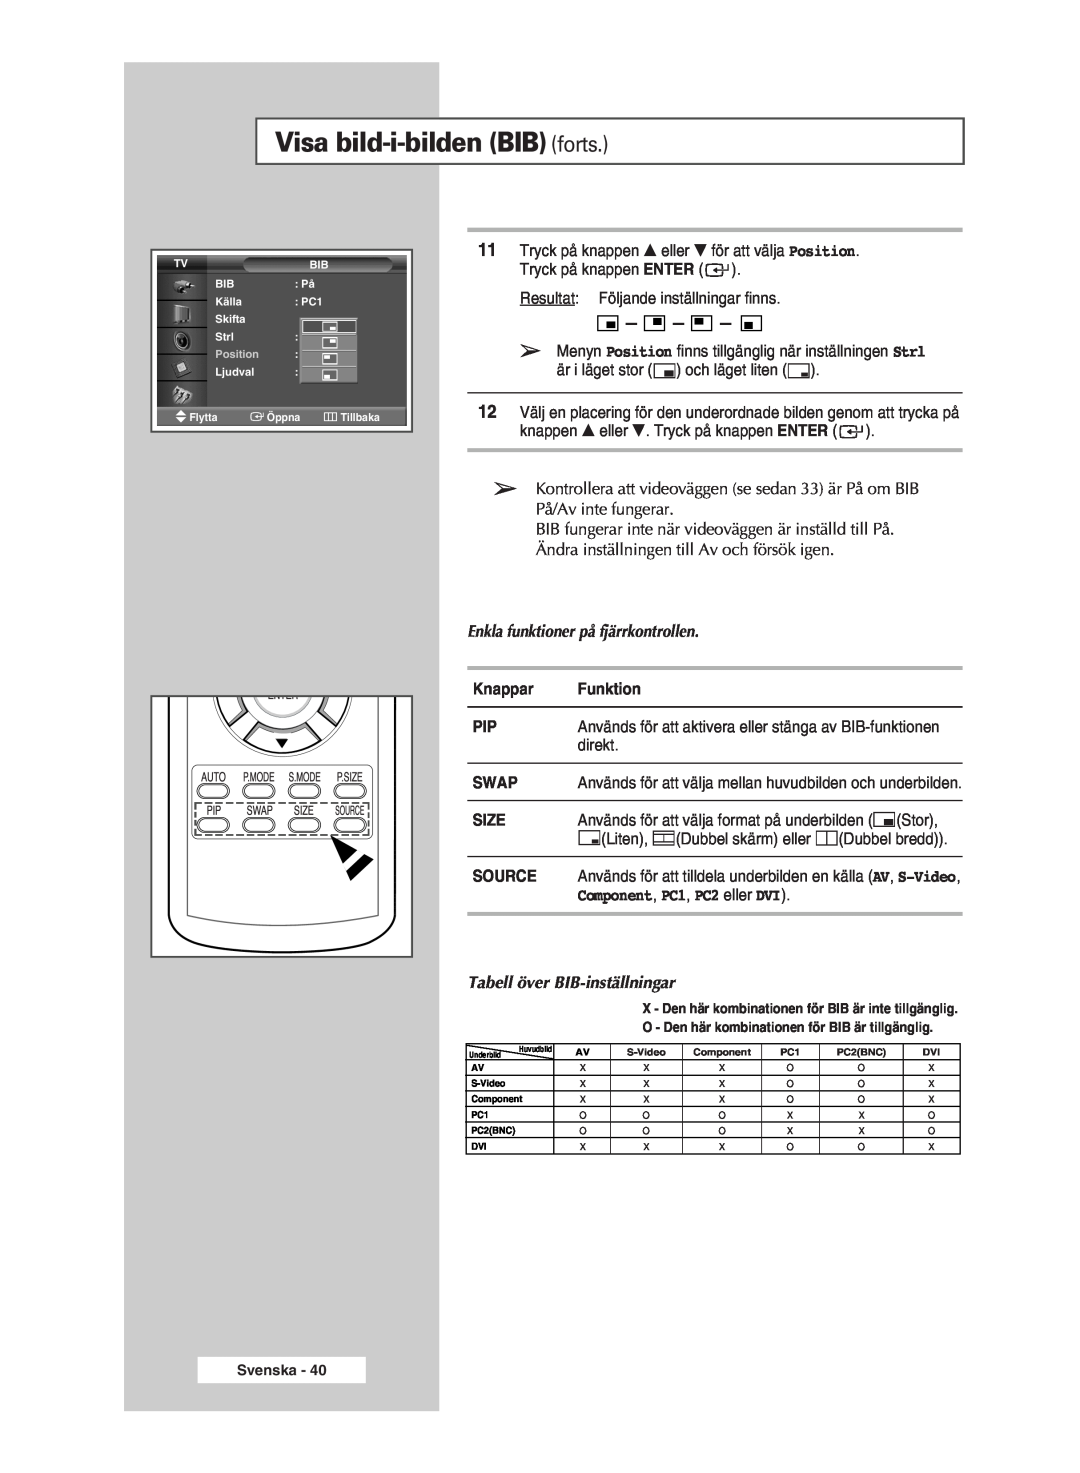 Samsung PPM42M5SSX/EDC Visa bild-i-bilden BIB forts, Enkla funktioner på fjärrkontrollen, Tabell över BIB-inställningar 